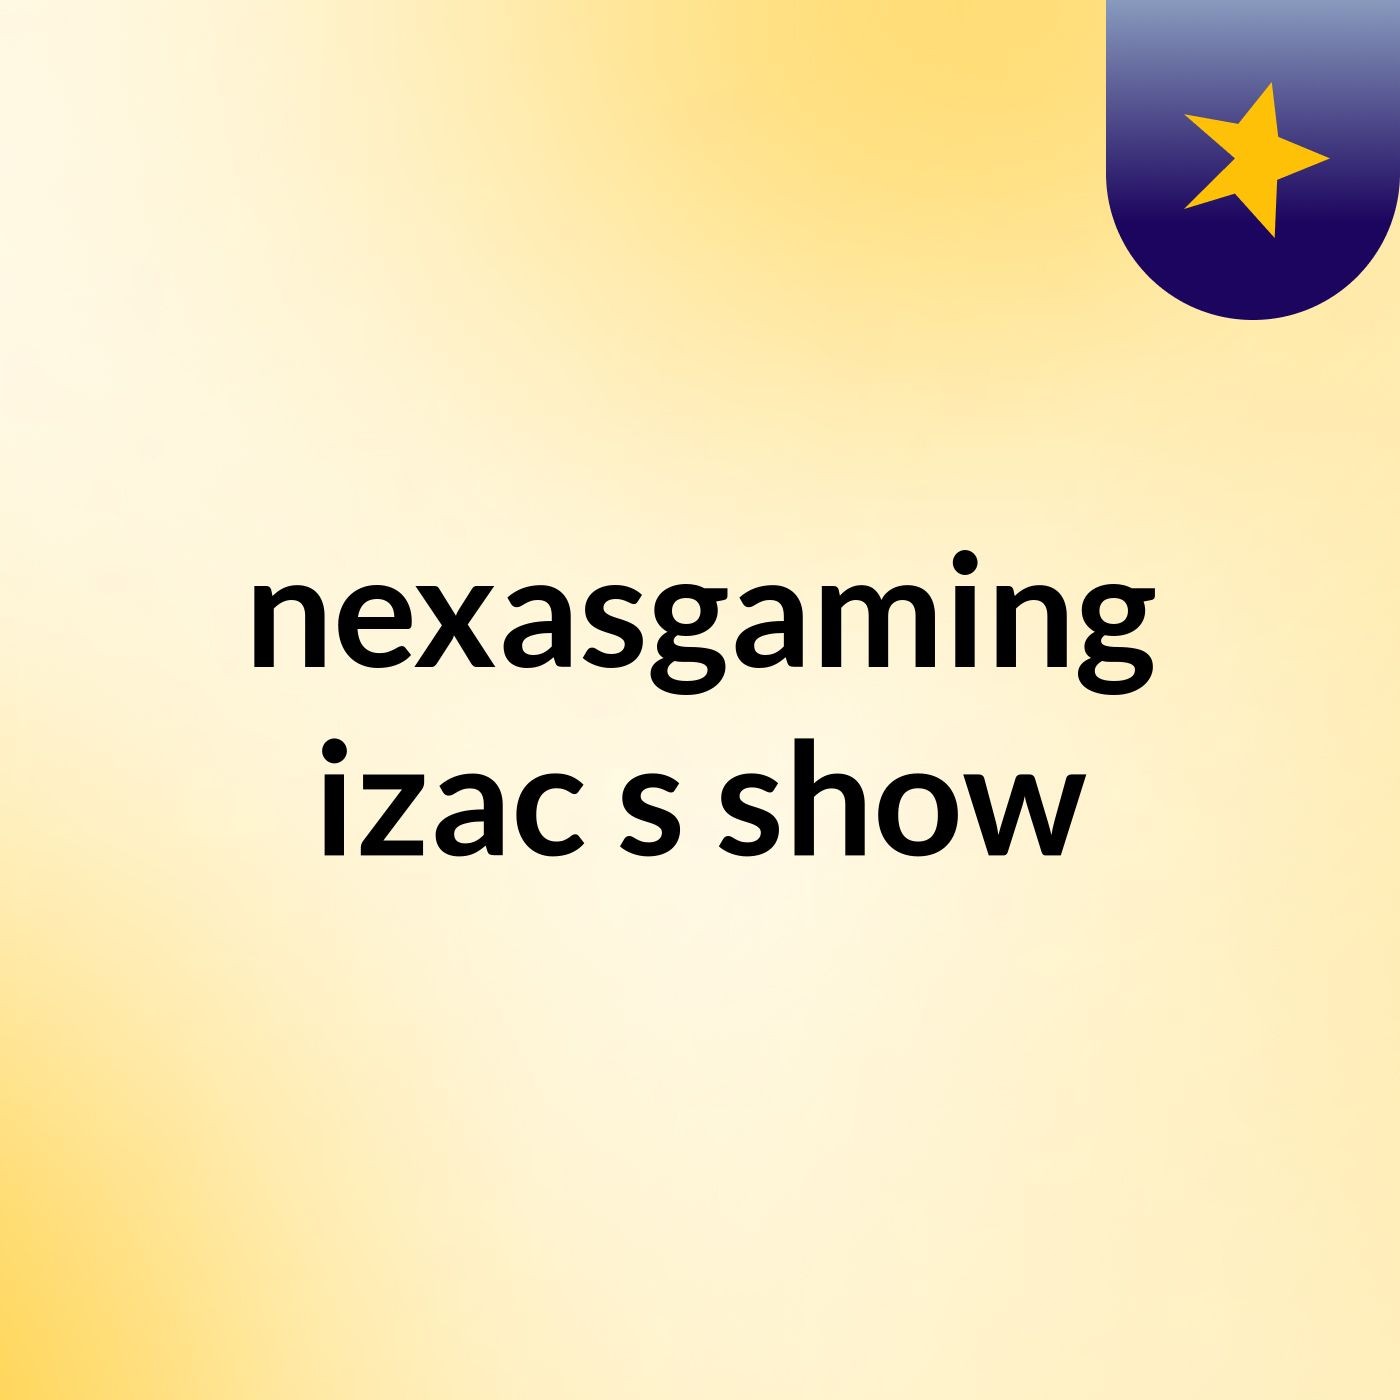 nexasgaming:izac's show